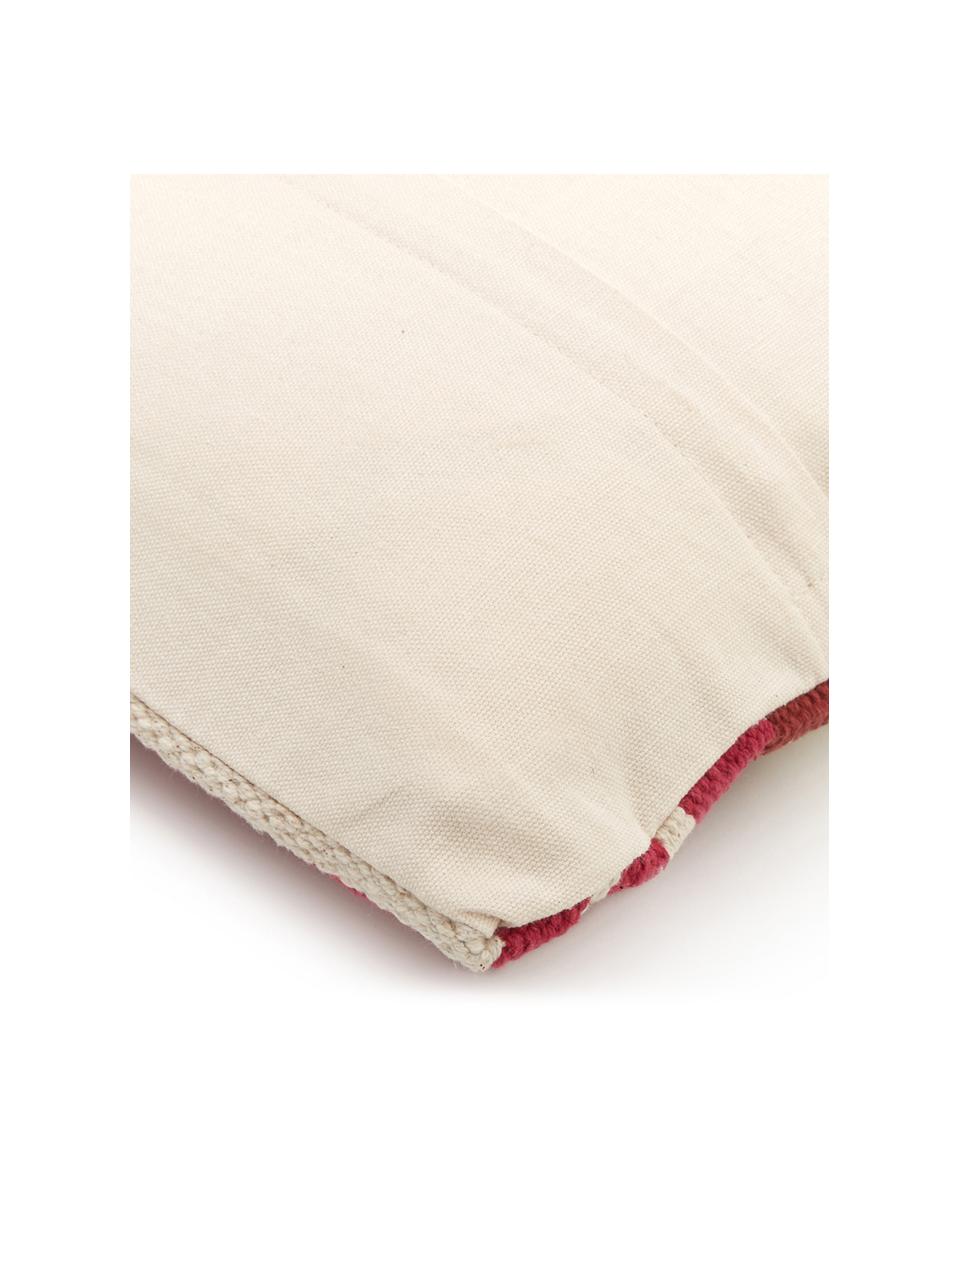 Tkana poszewka na poduszkę w stylu etno Tuca, Bawełna, Beżowy, różowy, ciemny czerwony, S 45 x D 45 cm